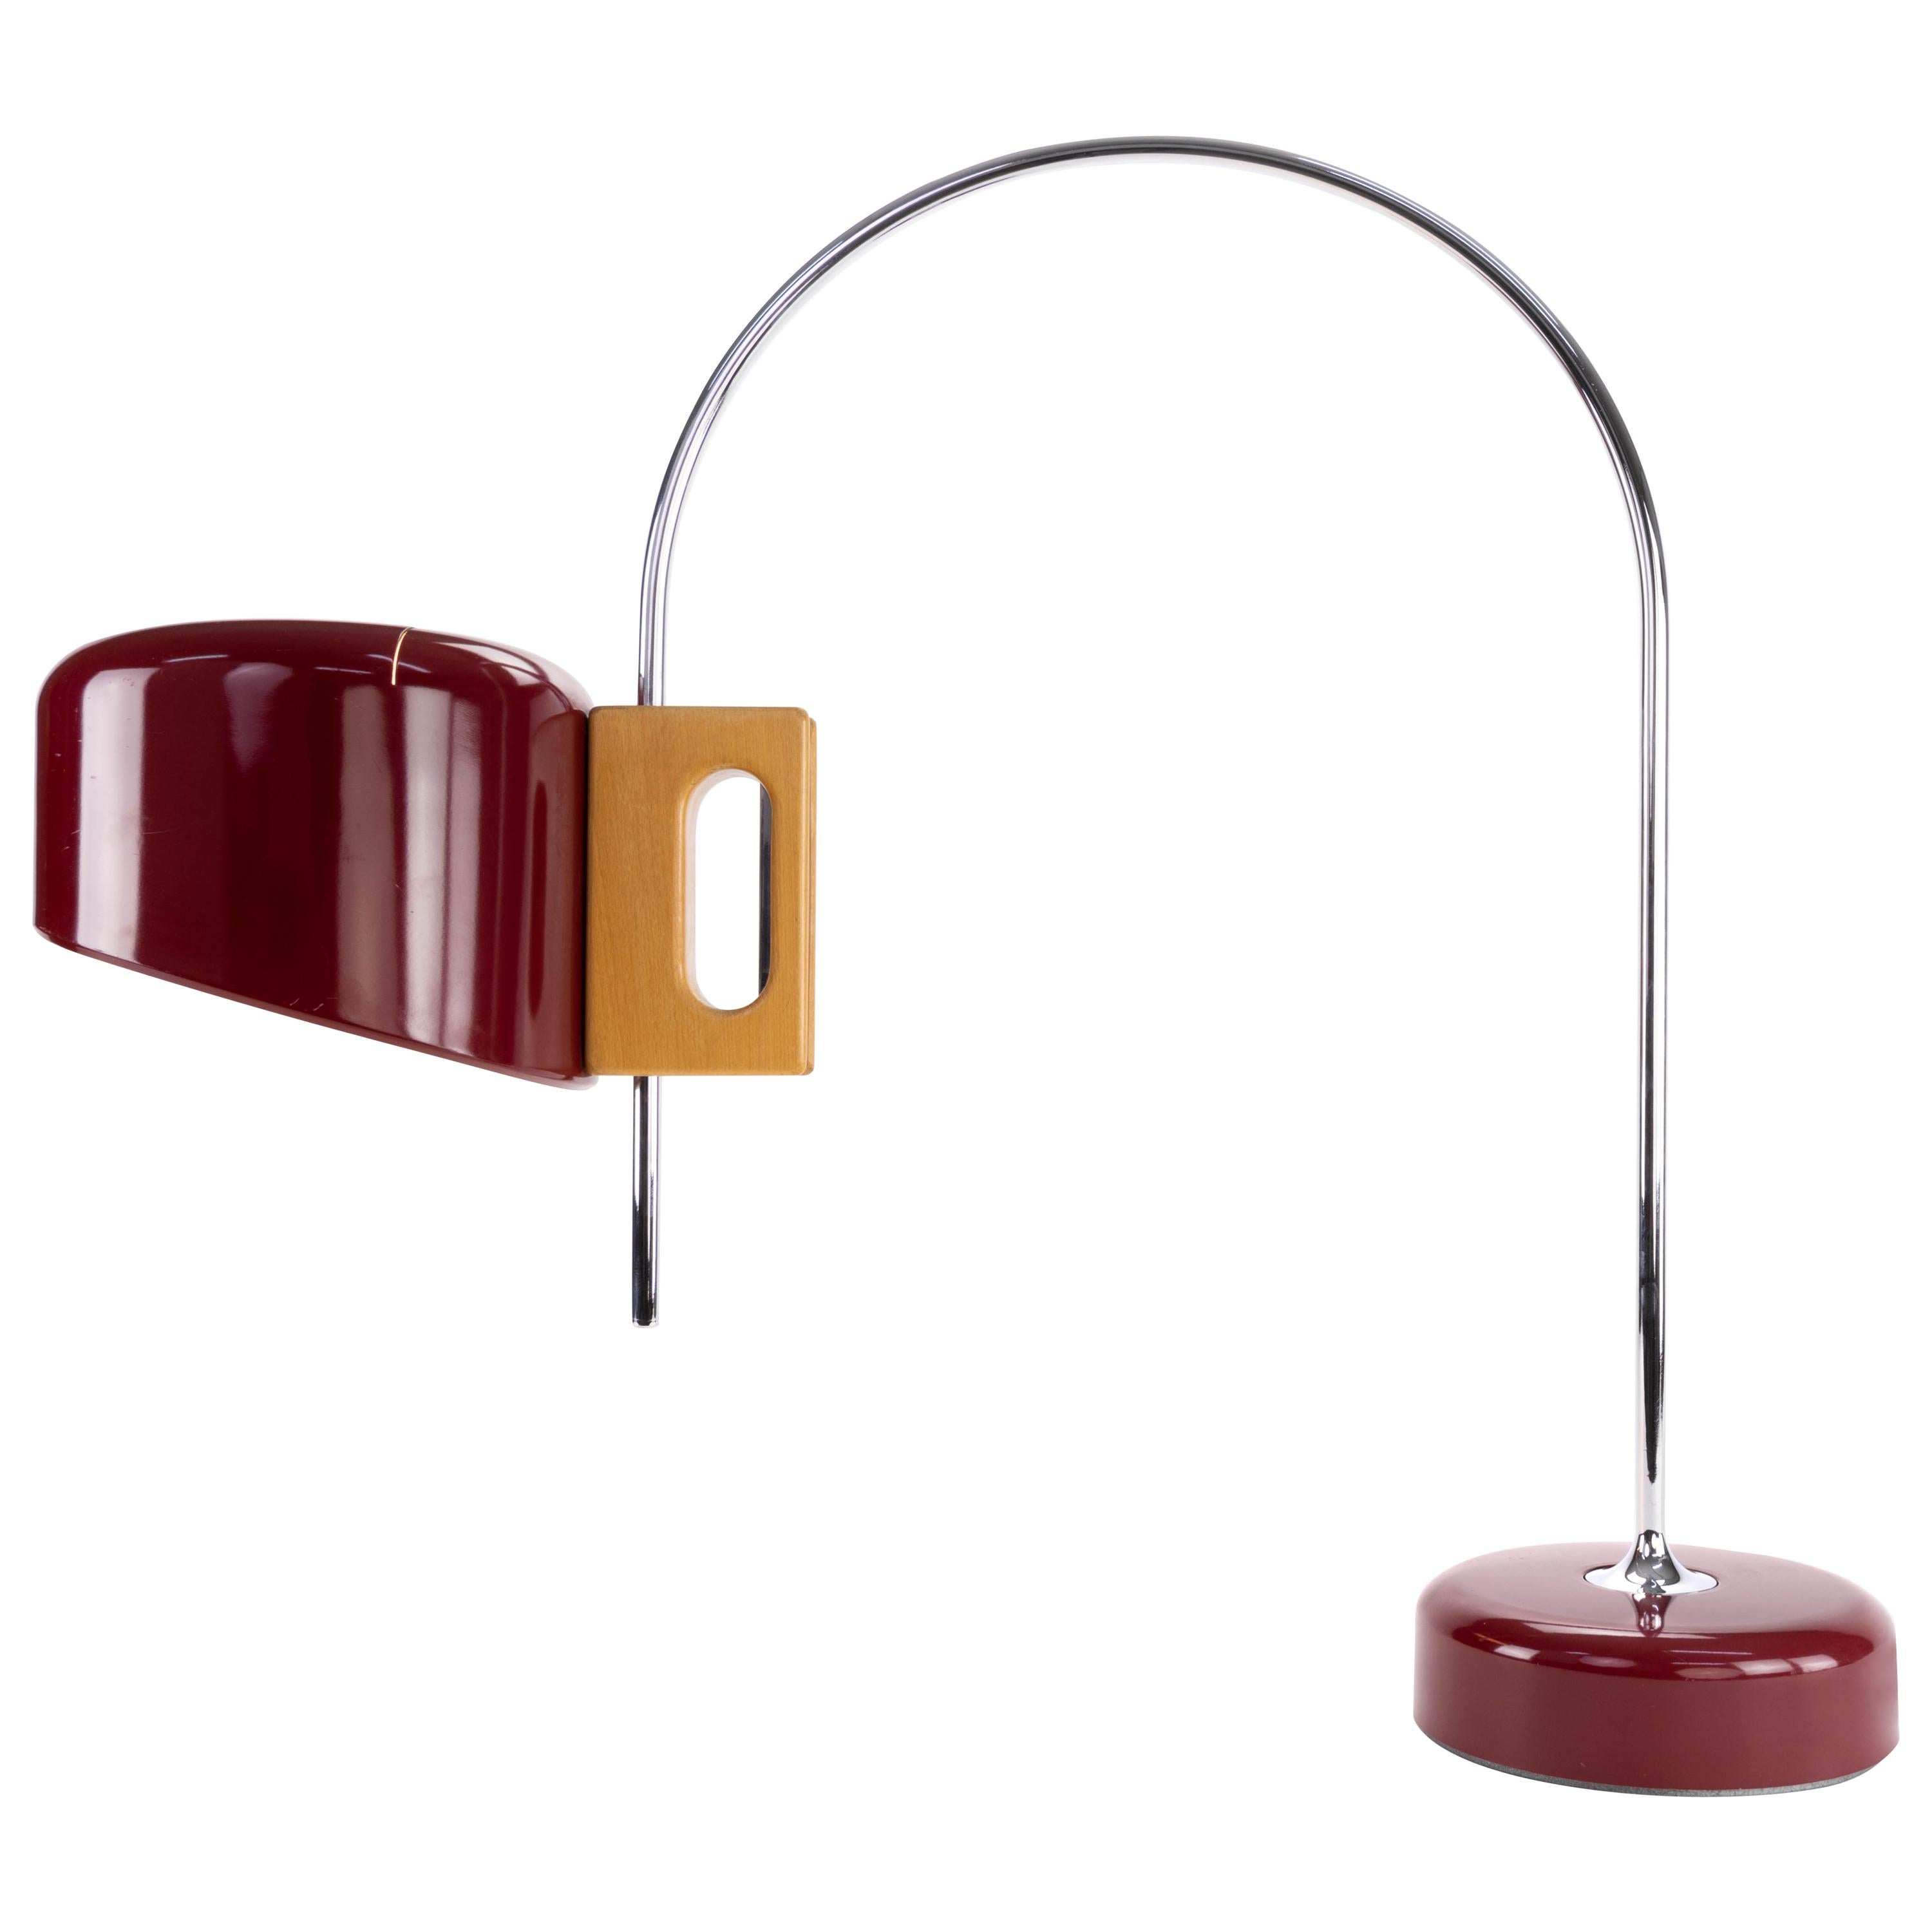 Sauce Mid-Century Modern Arc Table Lamp by Face Spain 1960